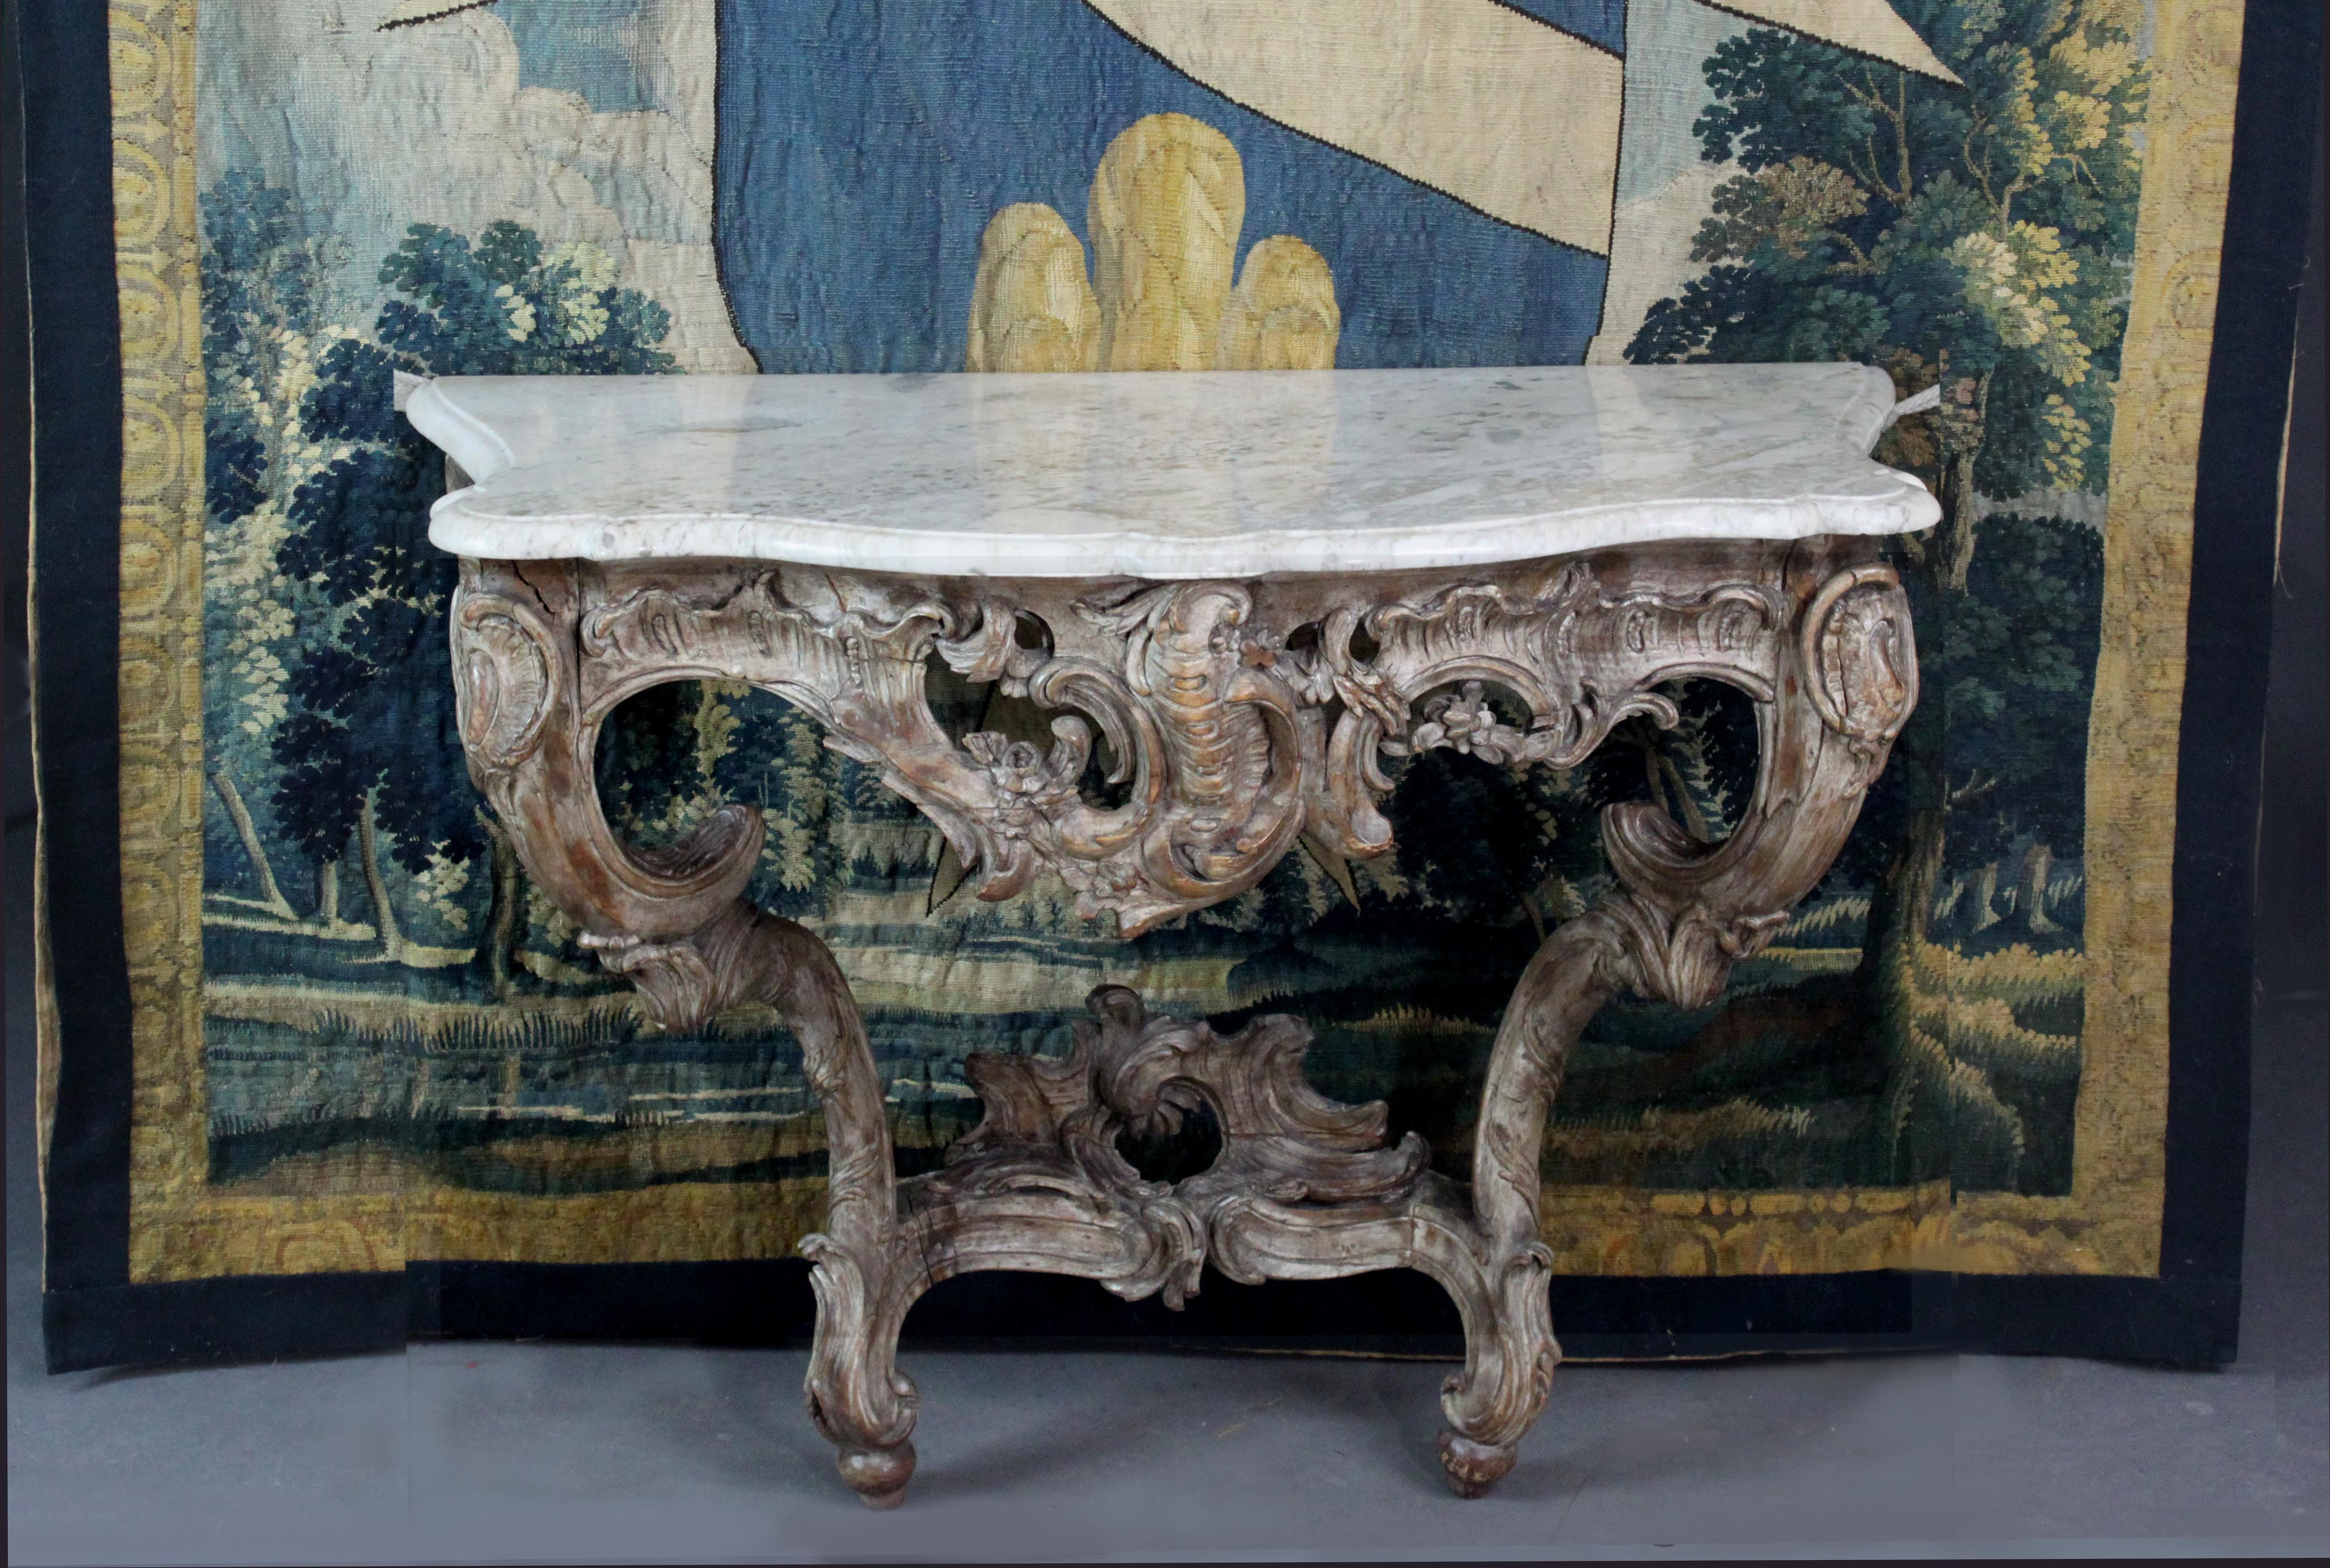 Ein Louis XV-Konsolentisch mit gut geschnitztem Dekor aus Rokoko-Rollen, Blumengirlanden und Blättern. Ursprünglich war es wohl vergoldet, doch die Reste des Gesso verleihen ihm ein attraktives graues Finish, bei dem das Holz des Obstbaums an